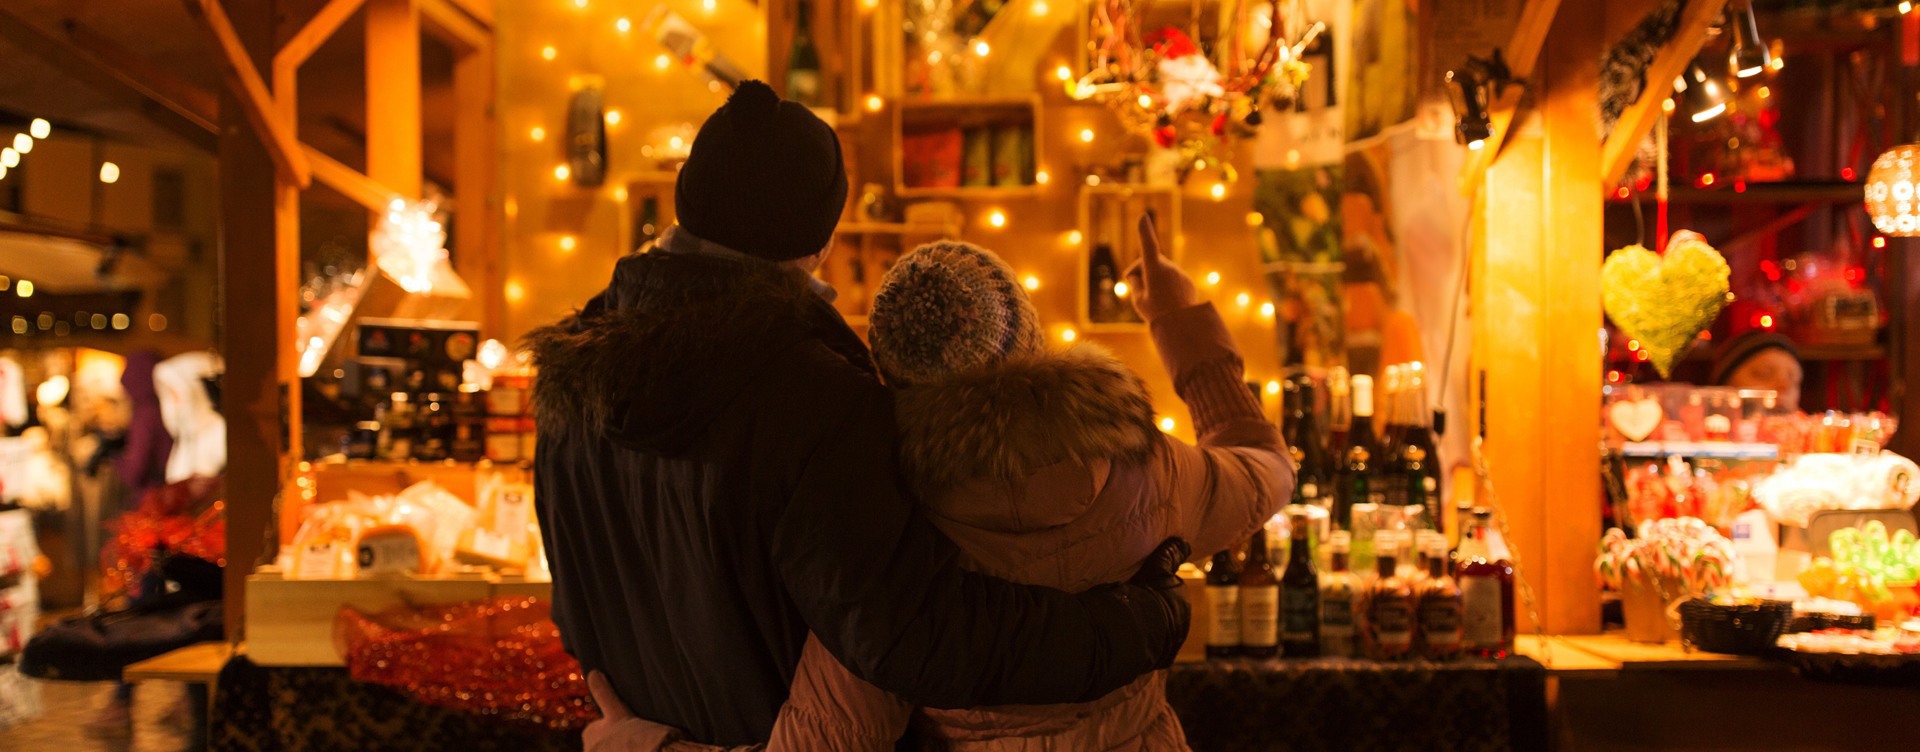 Beleef de gezellige kerstsfeer
tijdens je verblijf in Maastricht